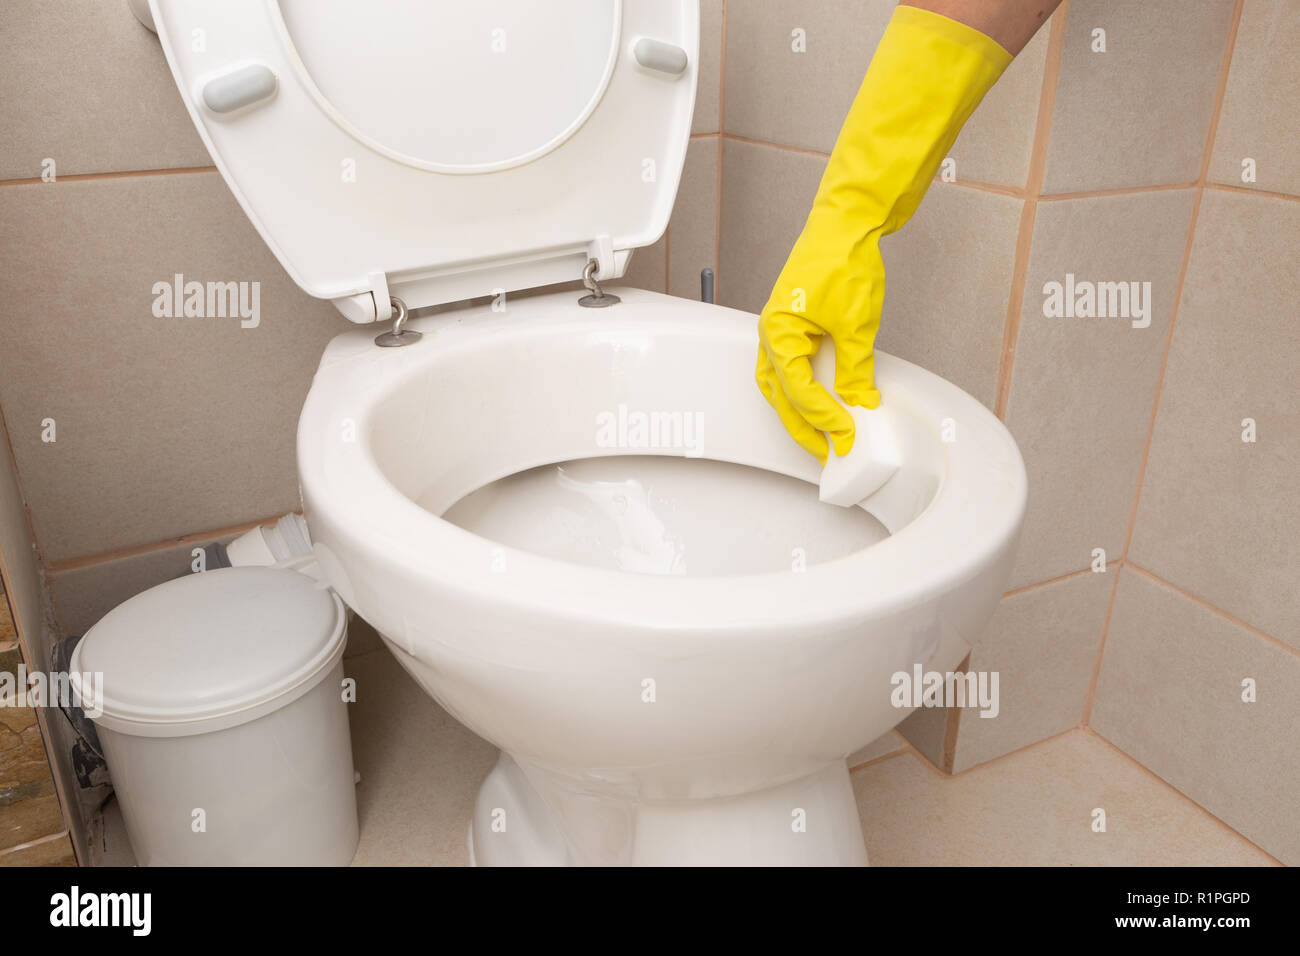 Personne portant des gants en latex jaune porcelaine de nettoyage de la cuvette des toilettes avec éponge Banque D'Images